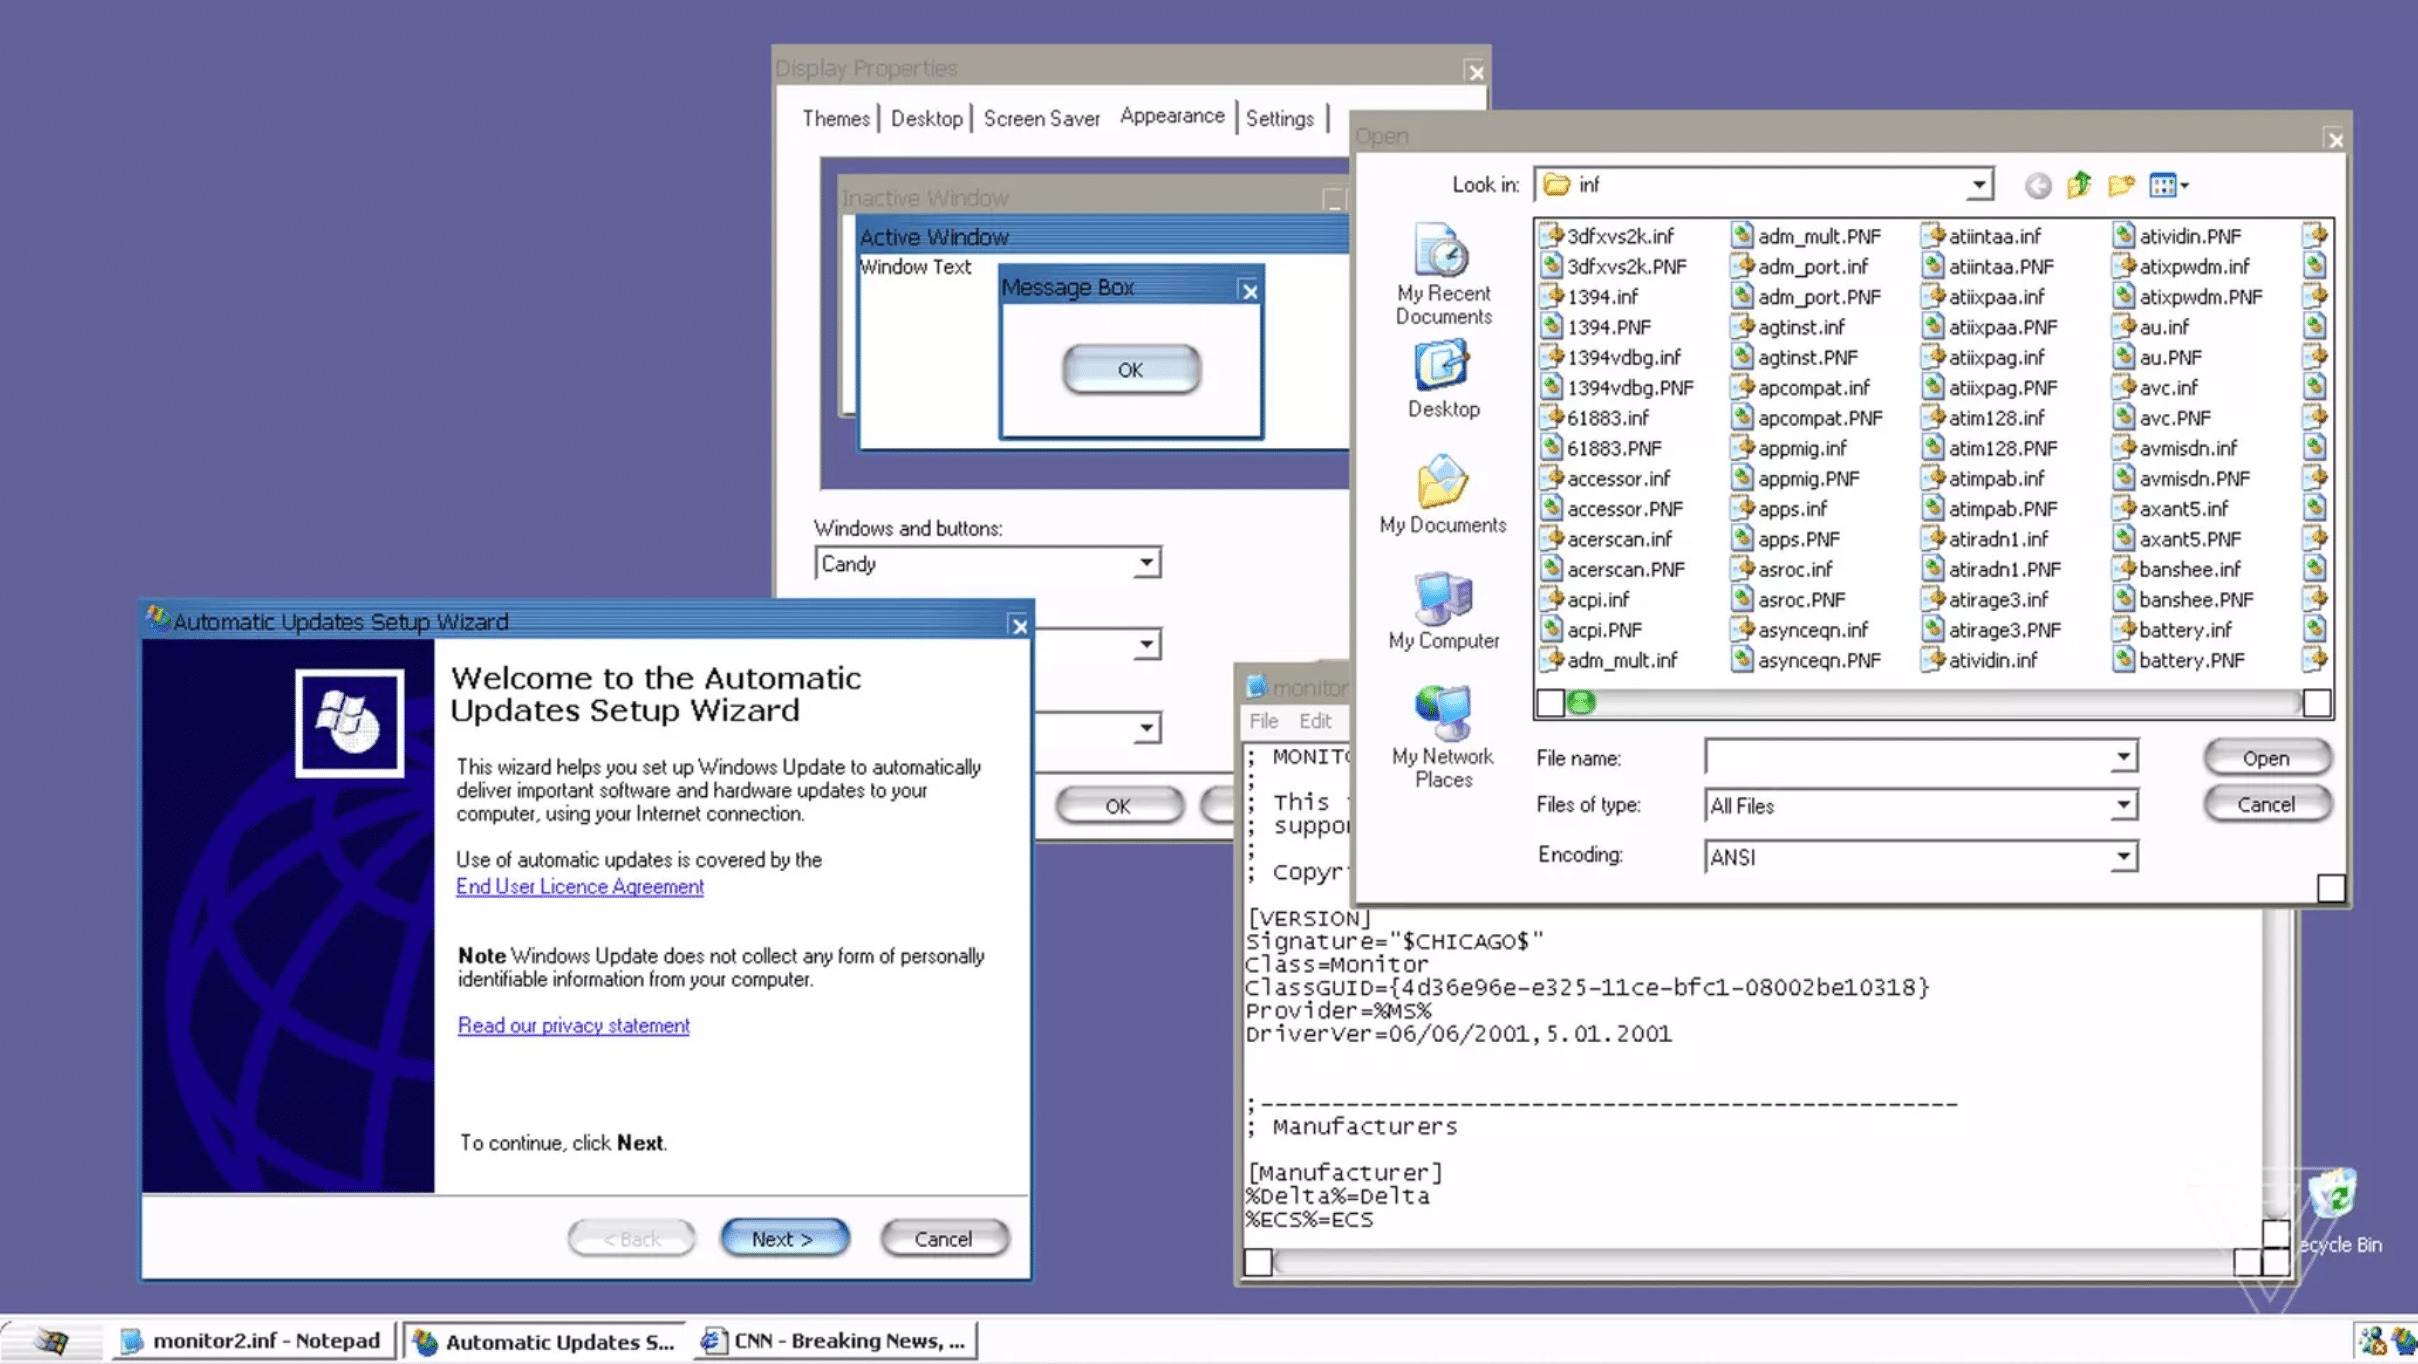 Candy-Thema von Windows XP